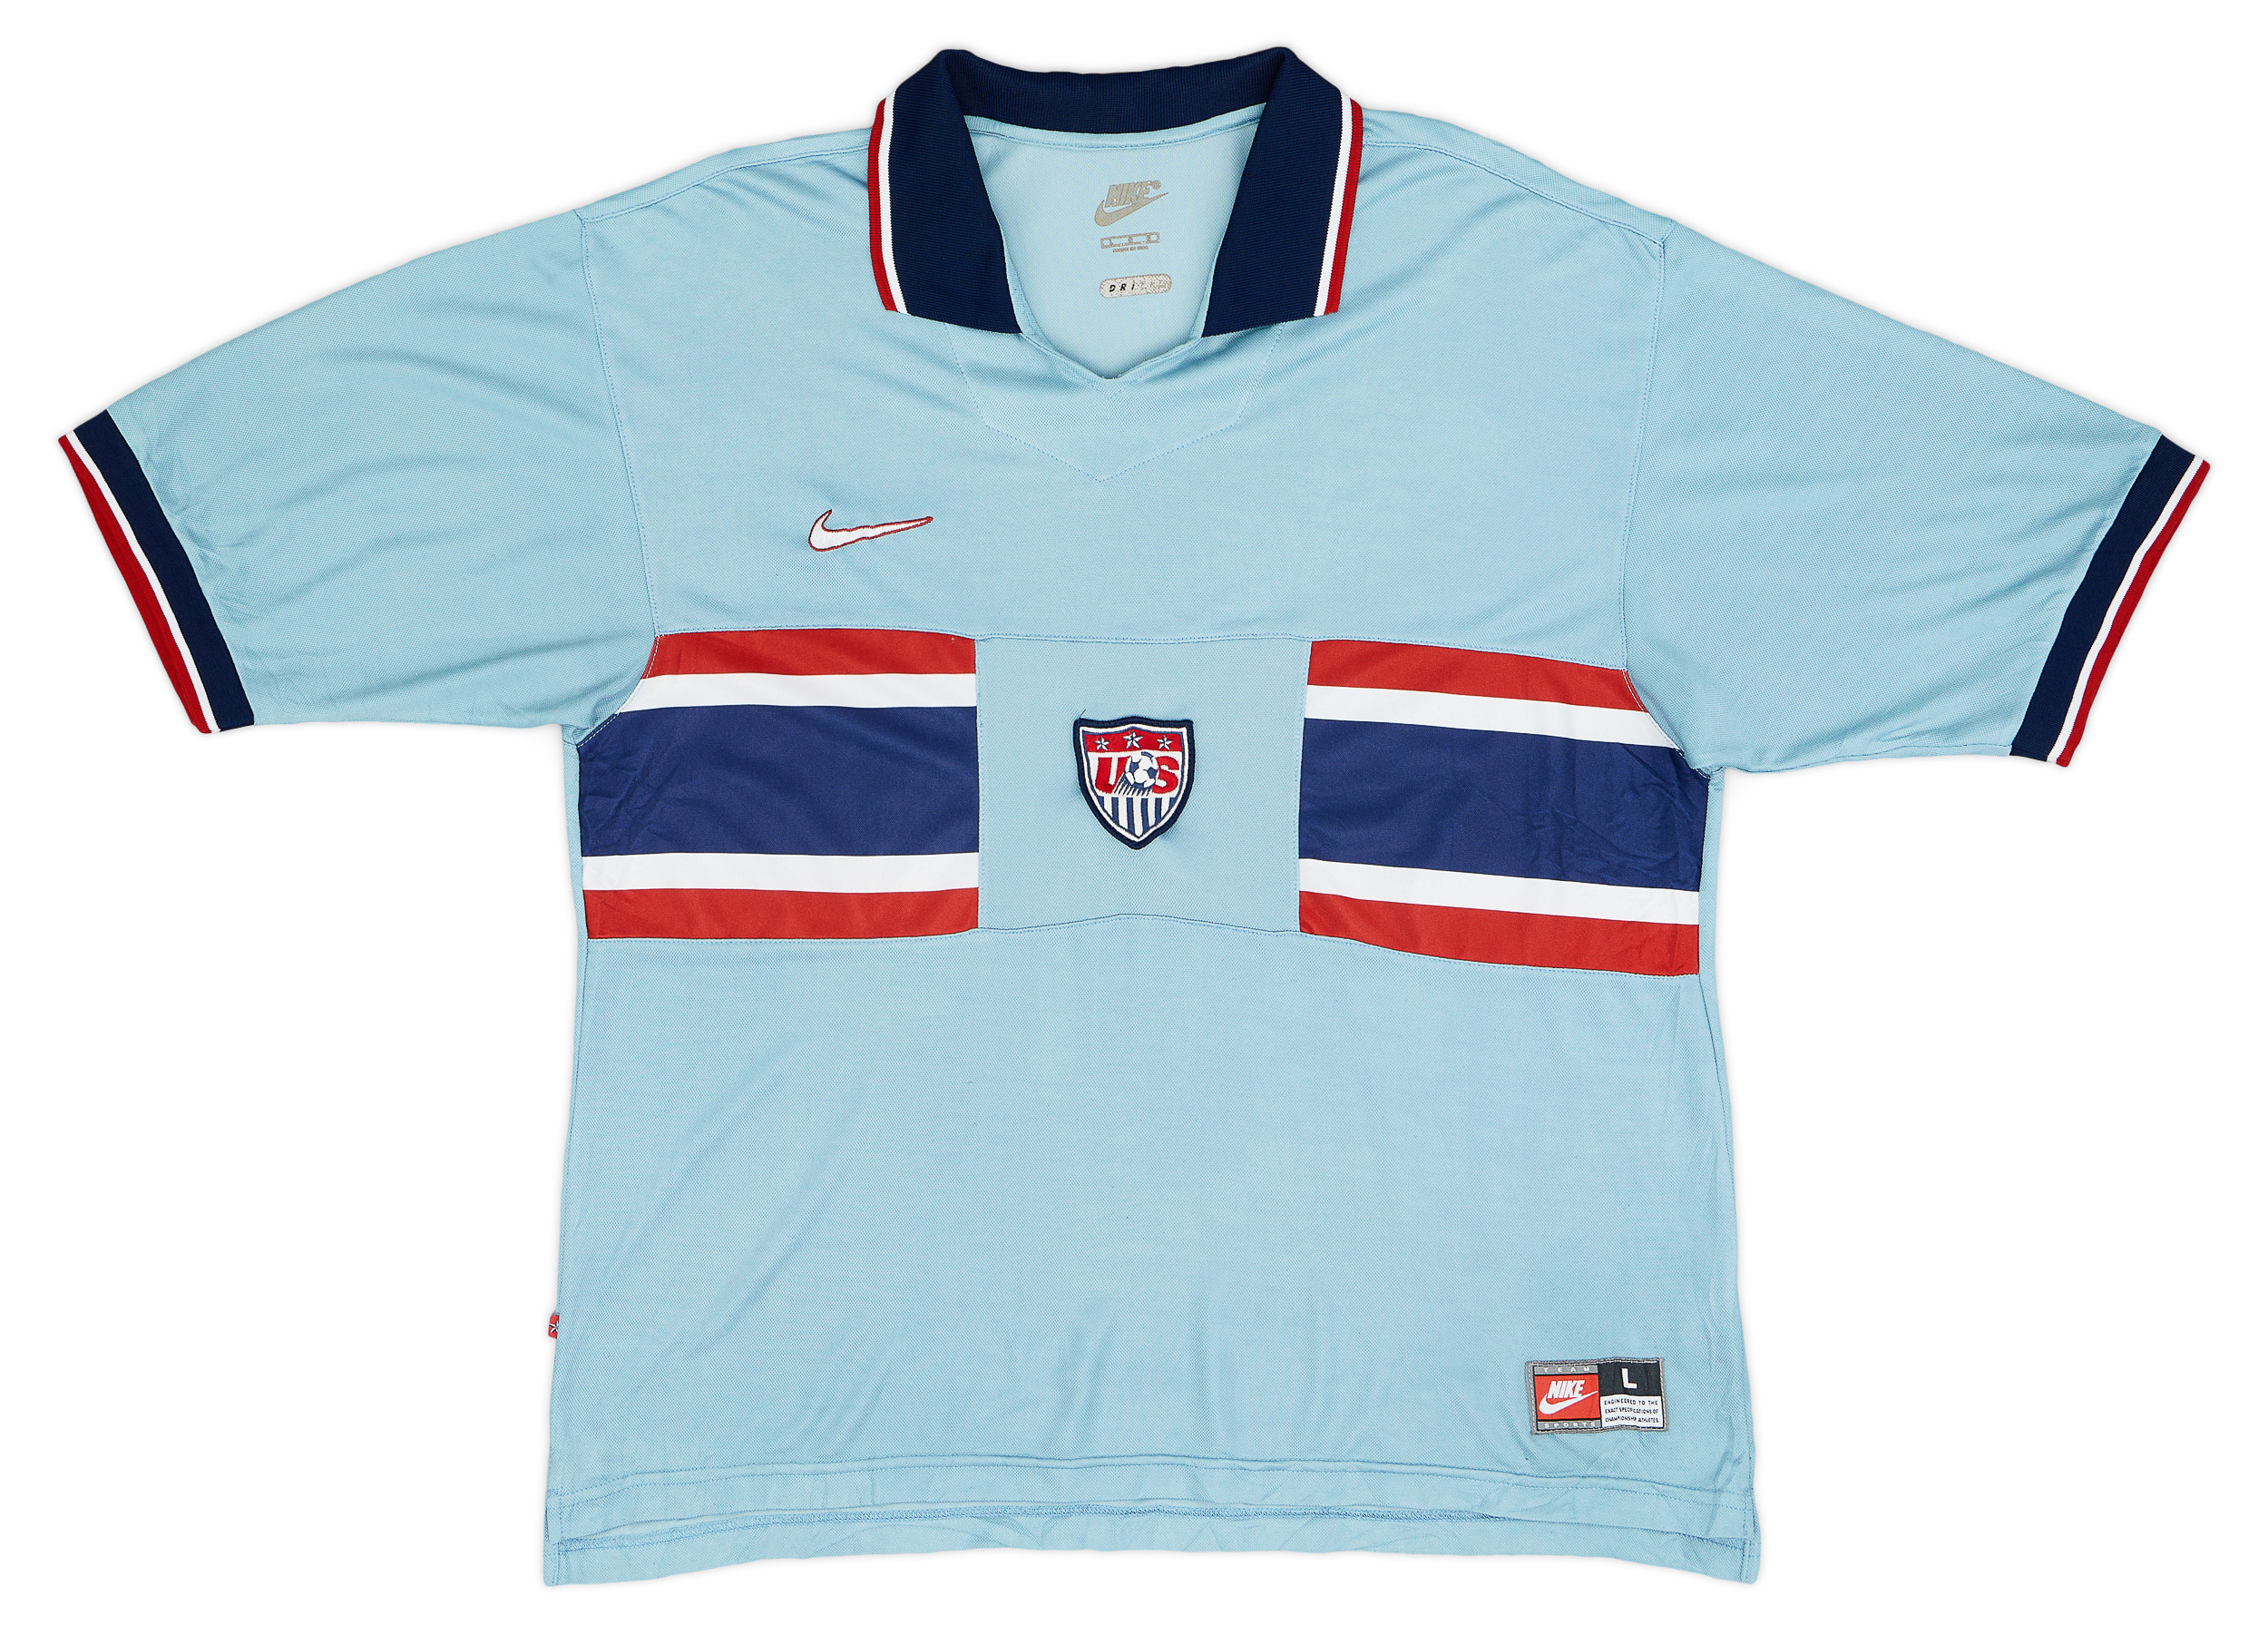 1995 USA Away Shirt - 9/10 - ()